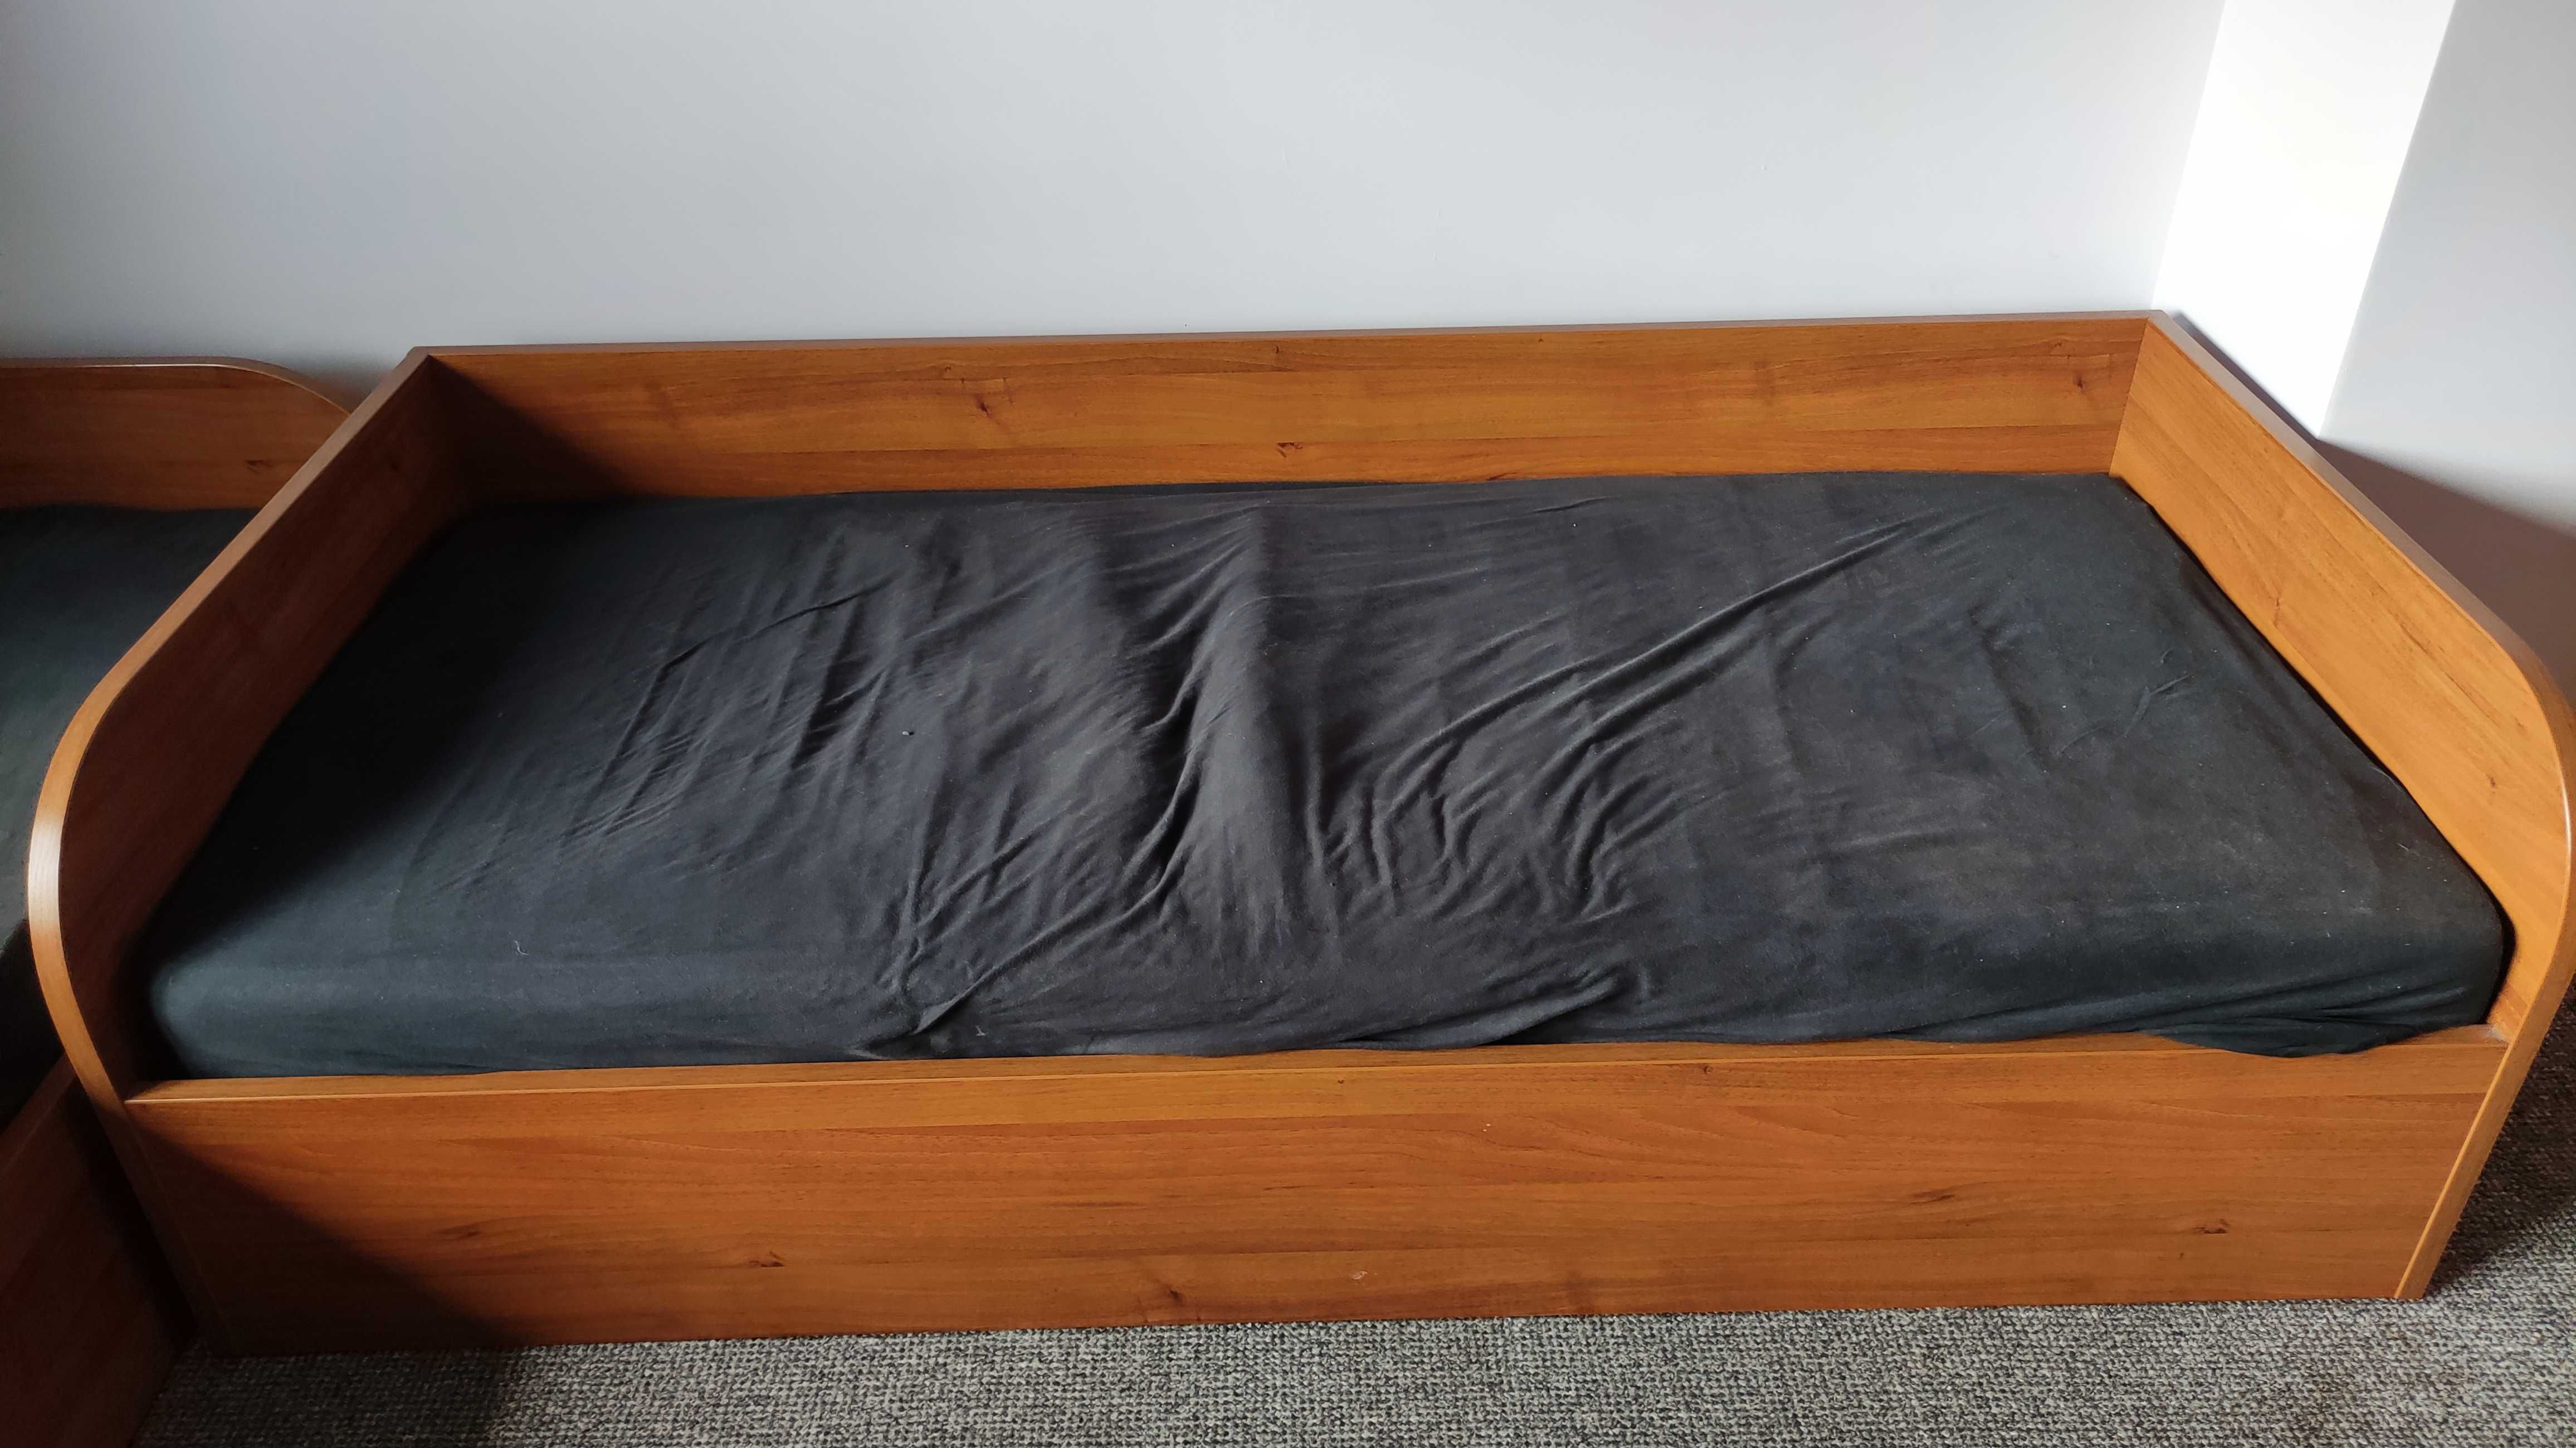 Łóżko pojedyncze 200x90 z materacem